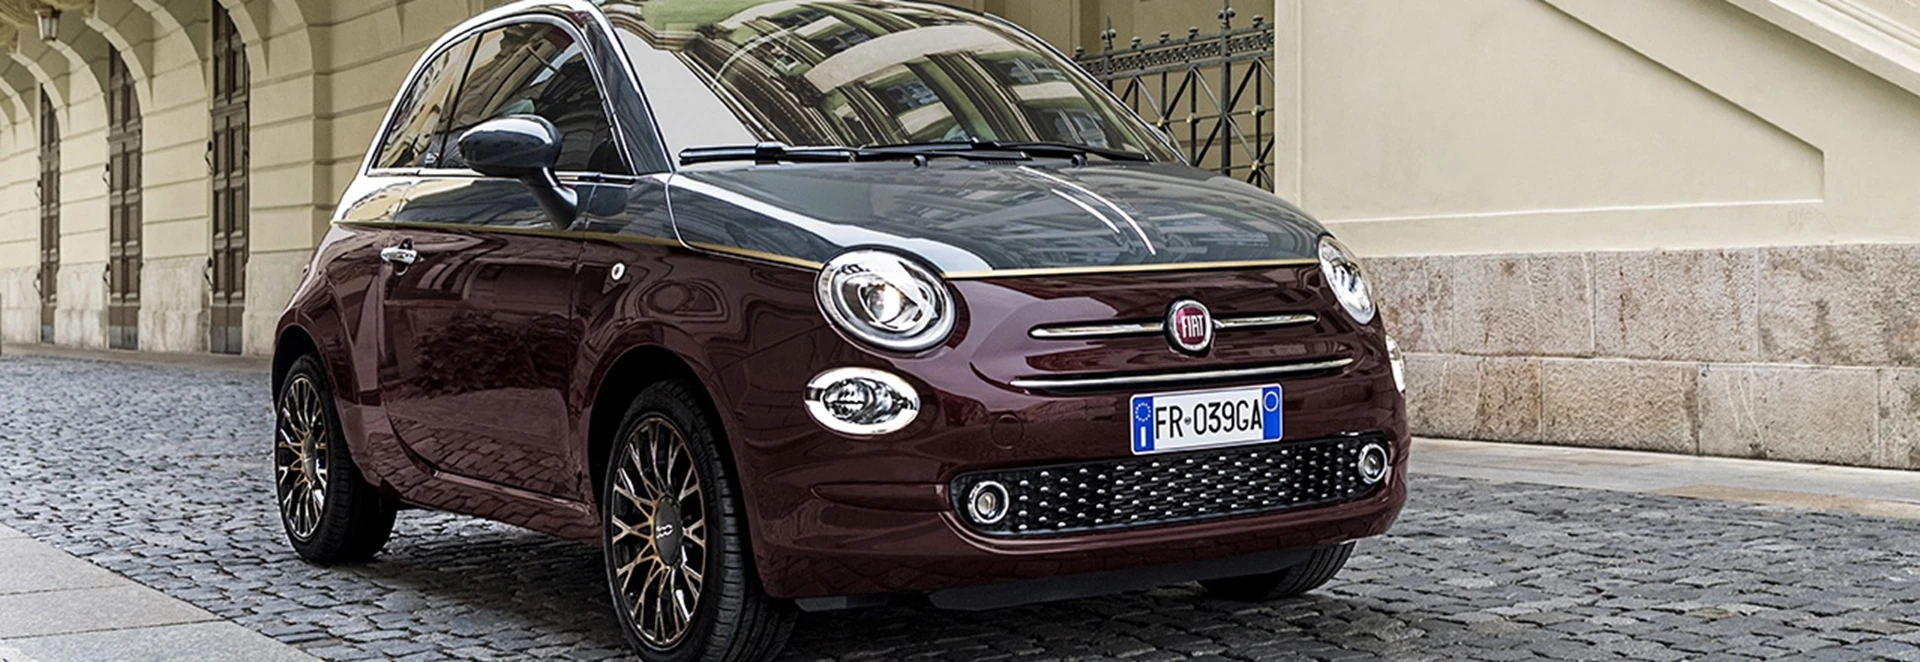 Fiat reveals special edition Fiat 500 Collezione 